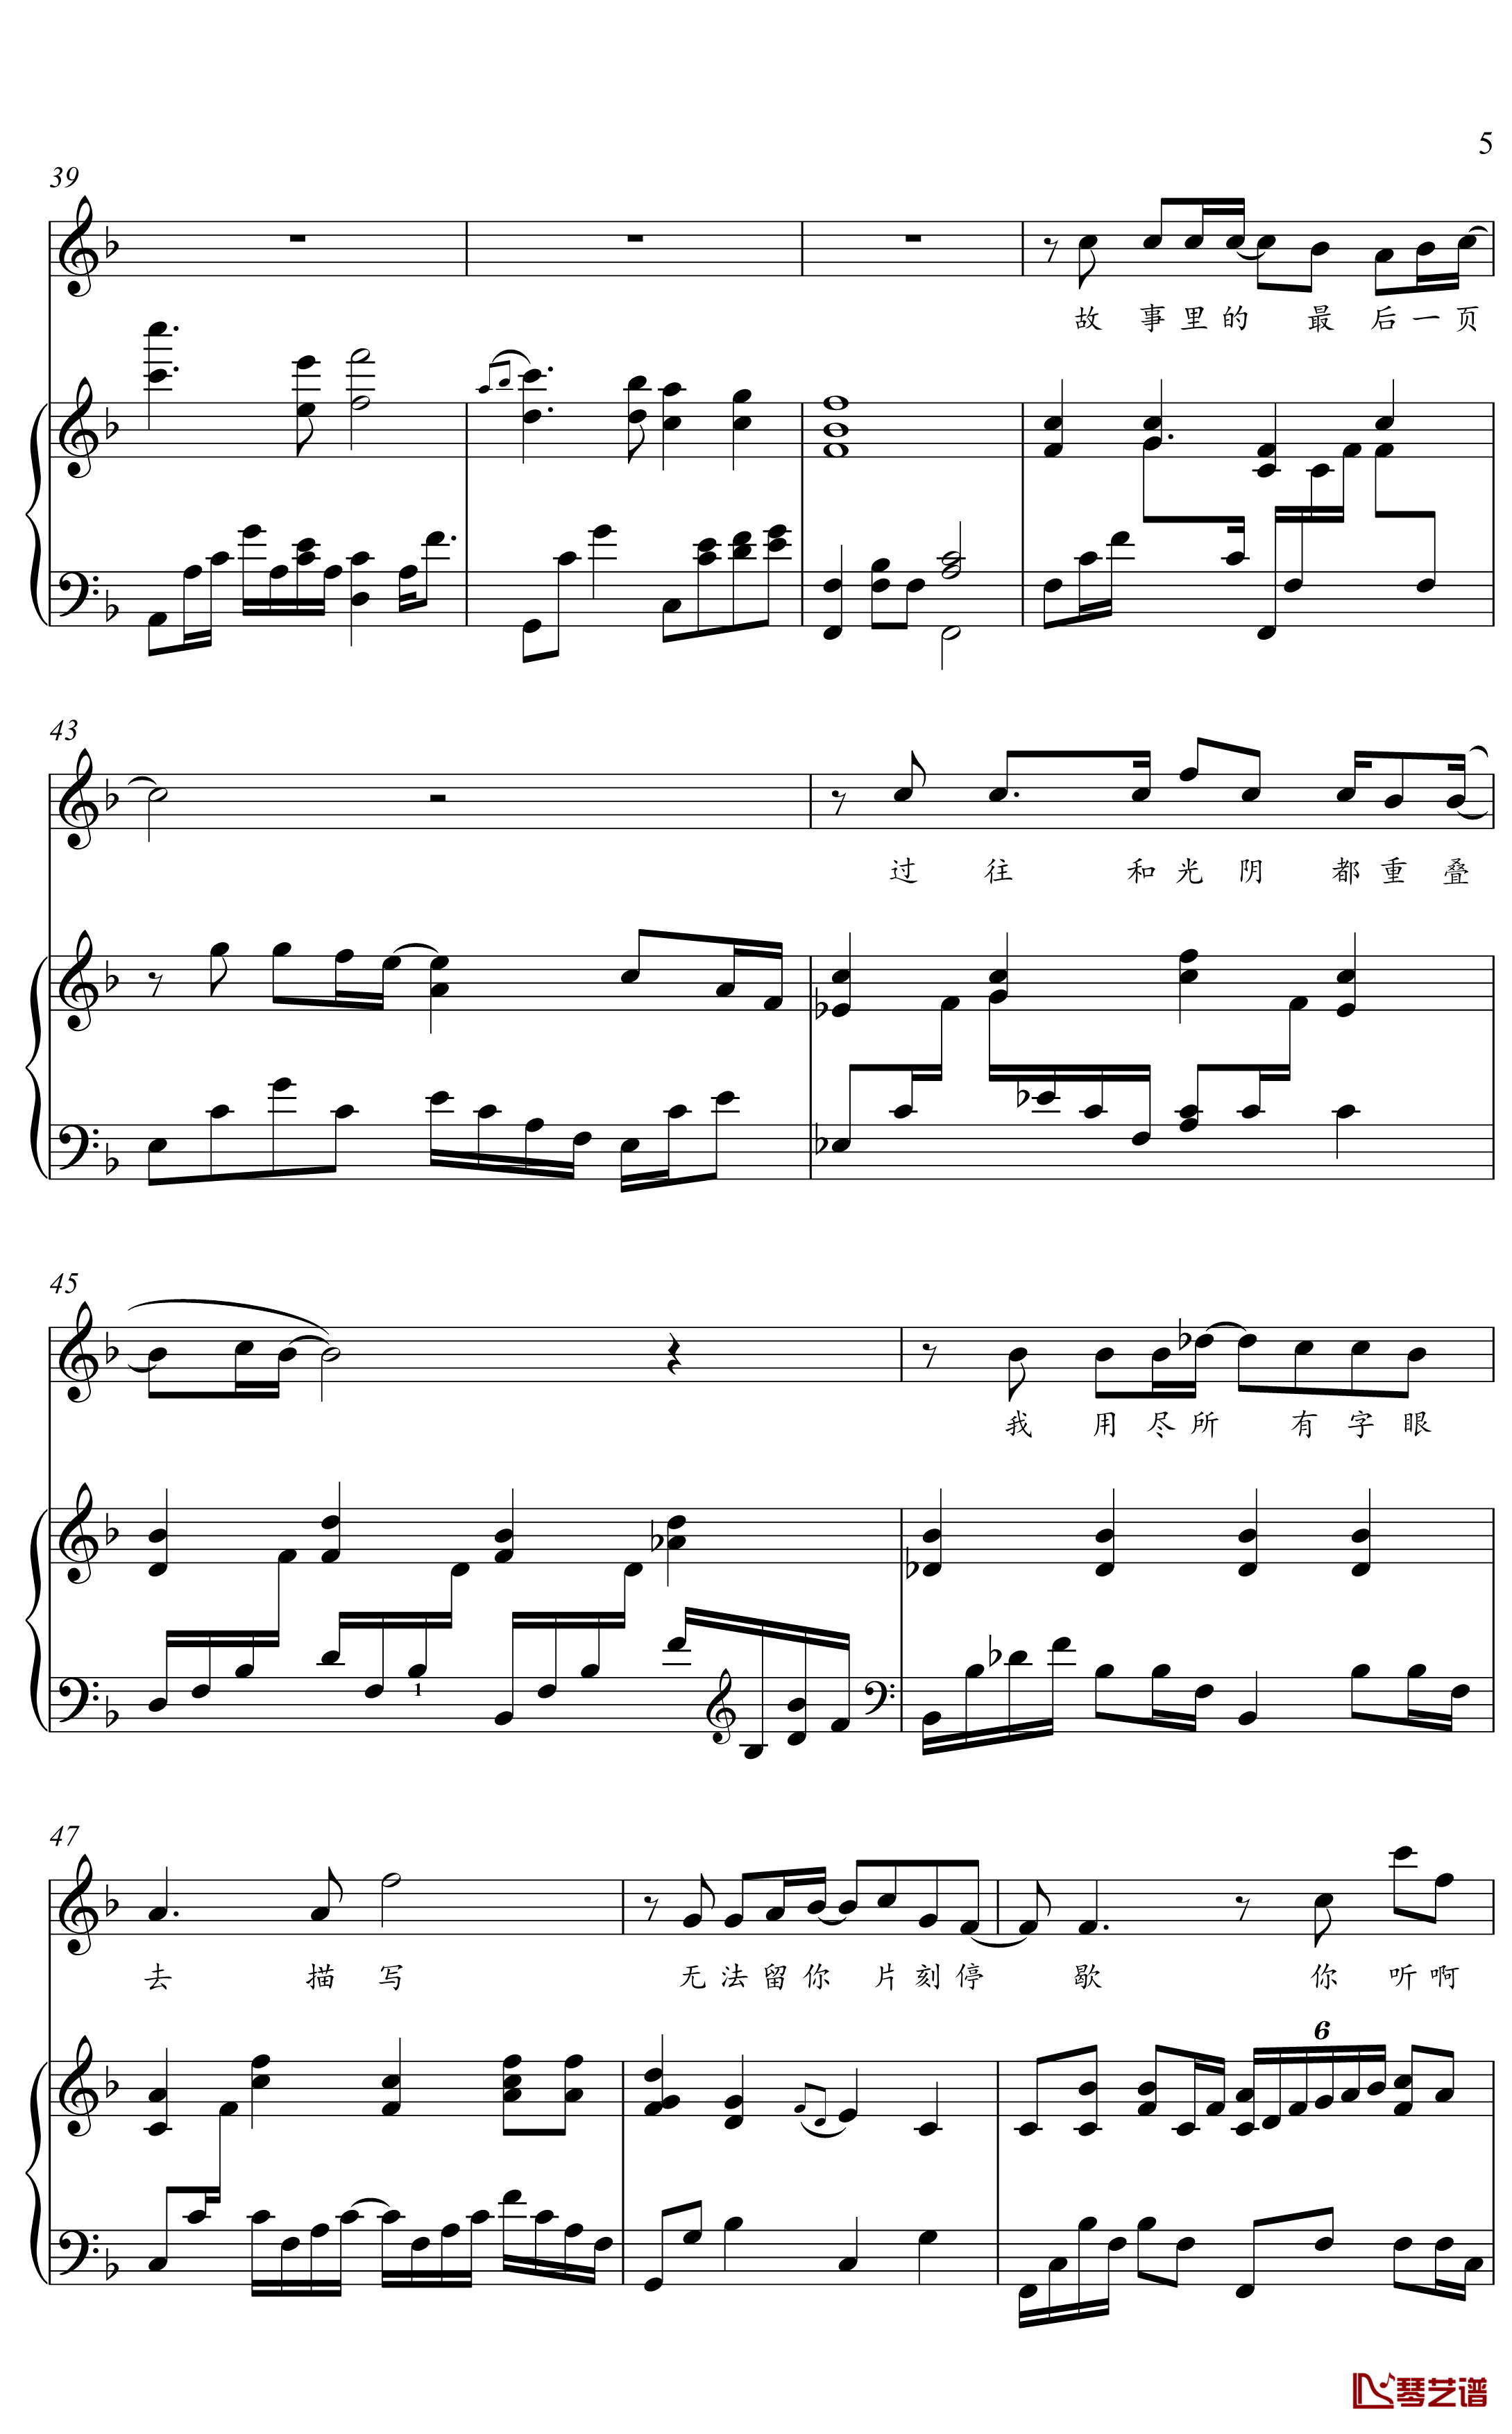 冬眠钢琴谱-金老师弹唱谱2003195